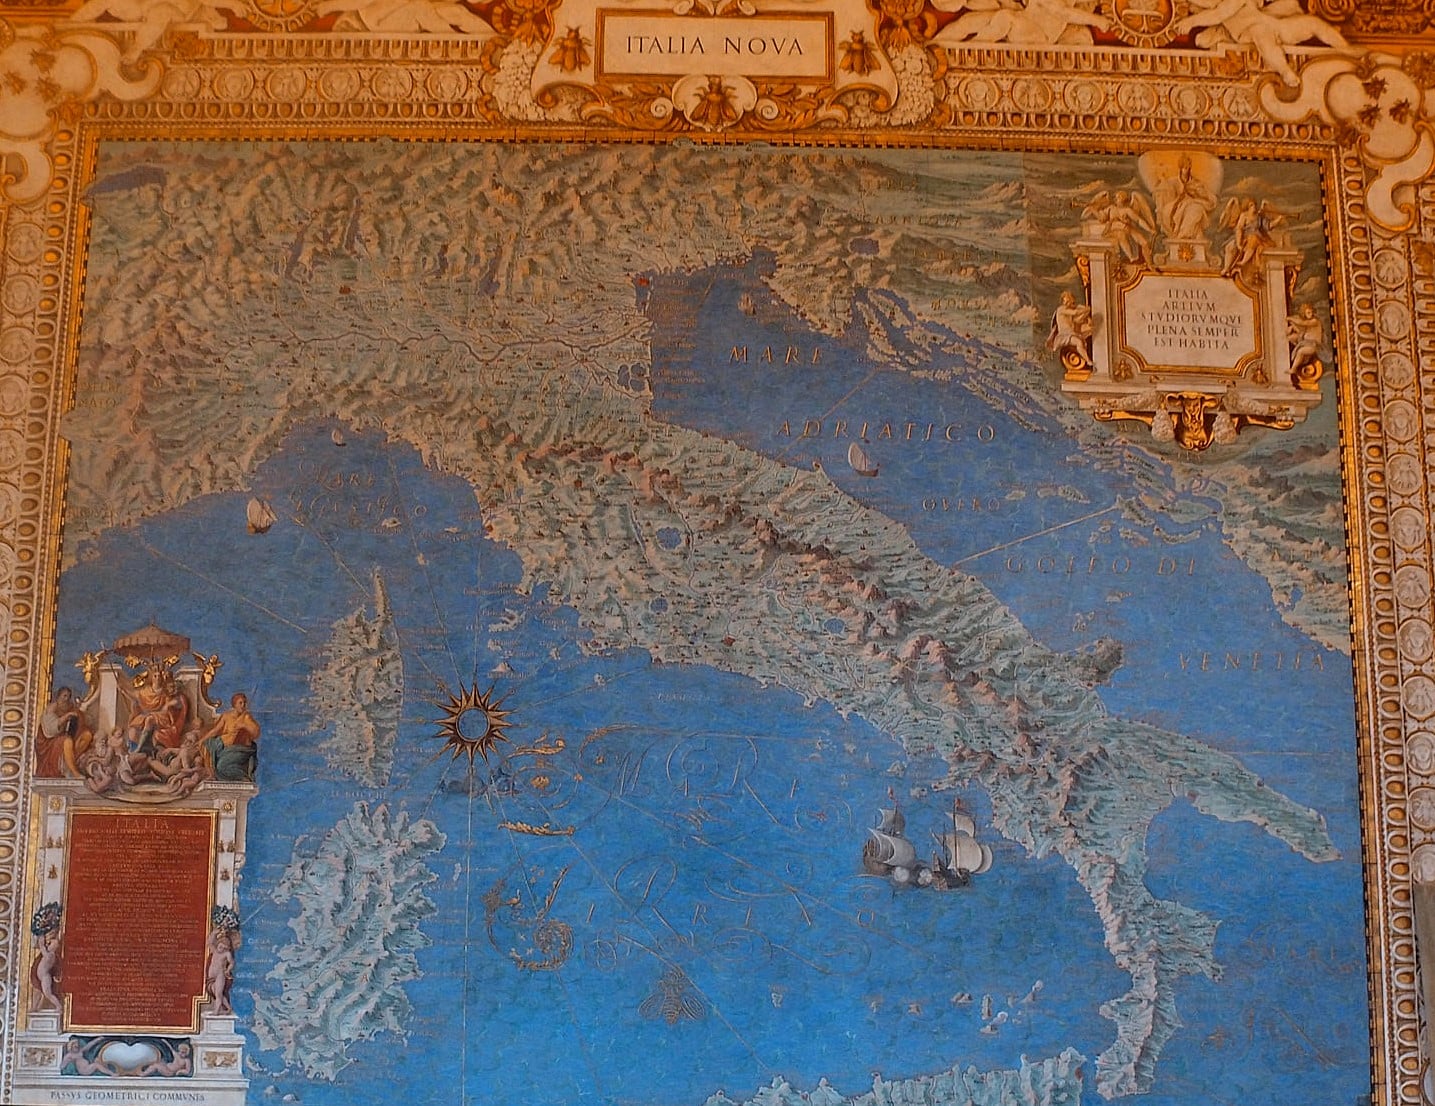 Haritalar Galerisi sonunda yer alan genel İtalya coğrafi haritası - Musei Vaticani